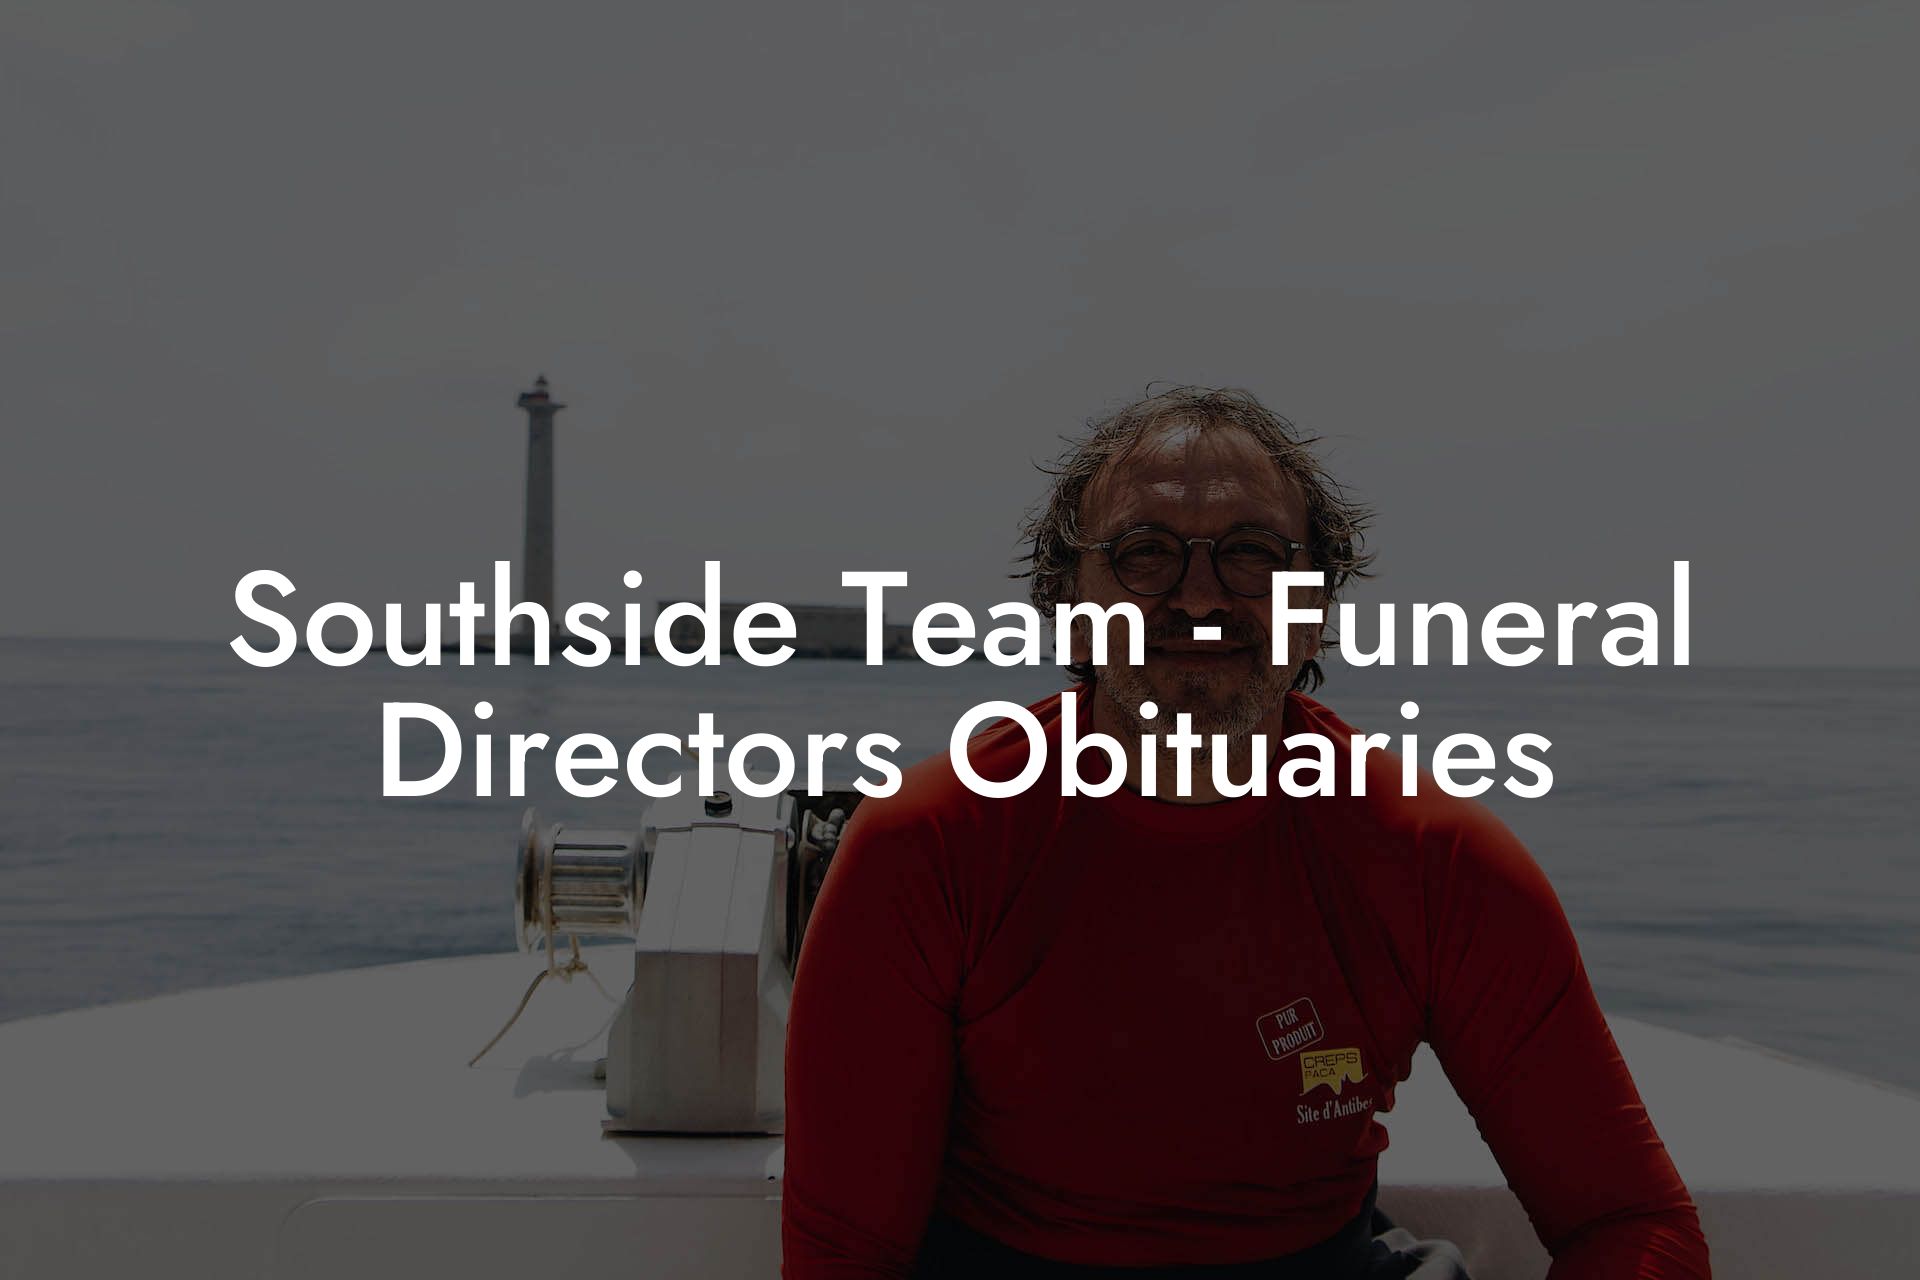 Southside Team - Funeral Directors Obituaries